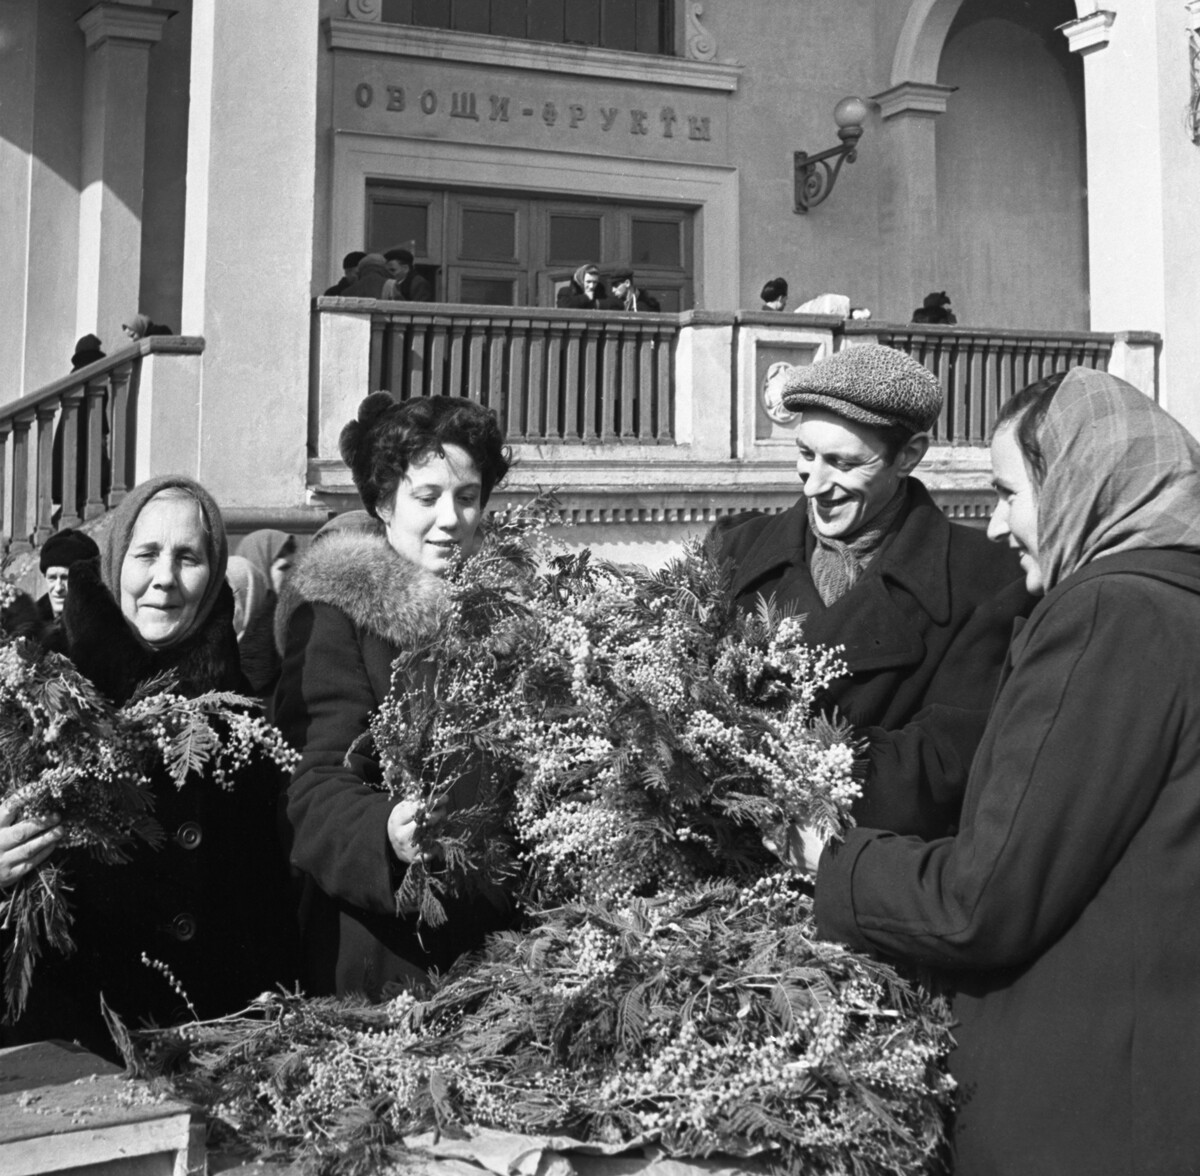 Продажа мимозы на Цветном бульваре Москвы накануне Международного женского дня 8 марта, 1956 г.